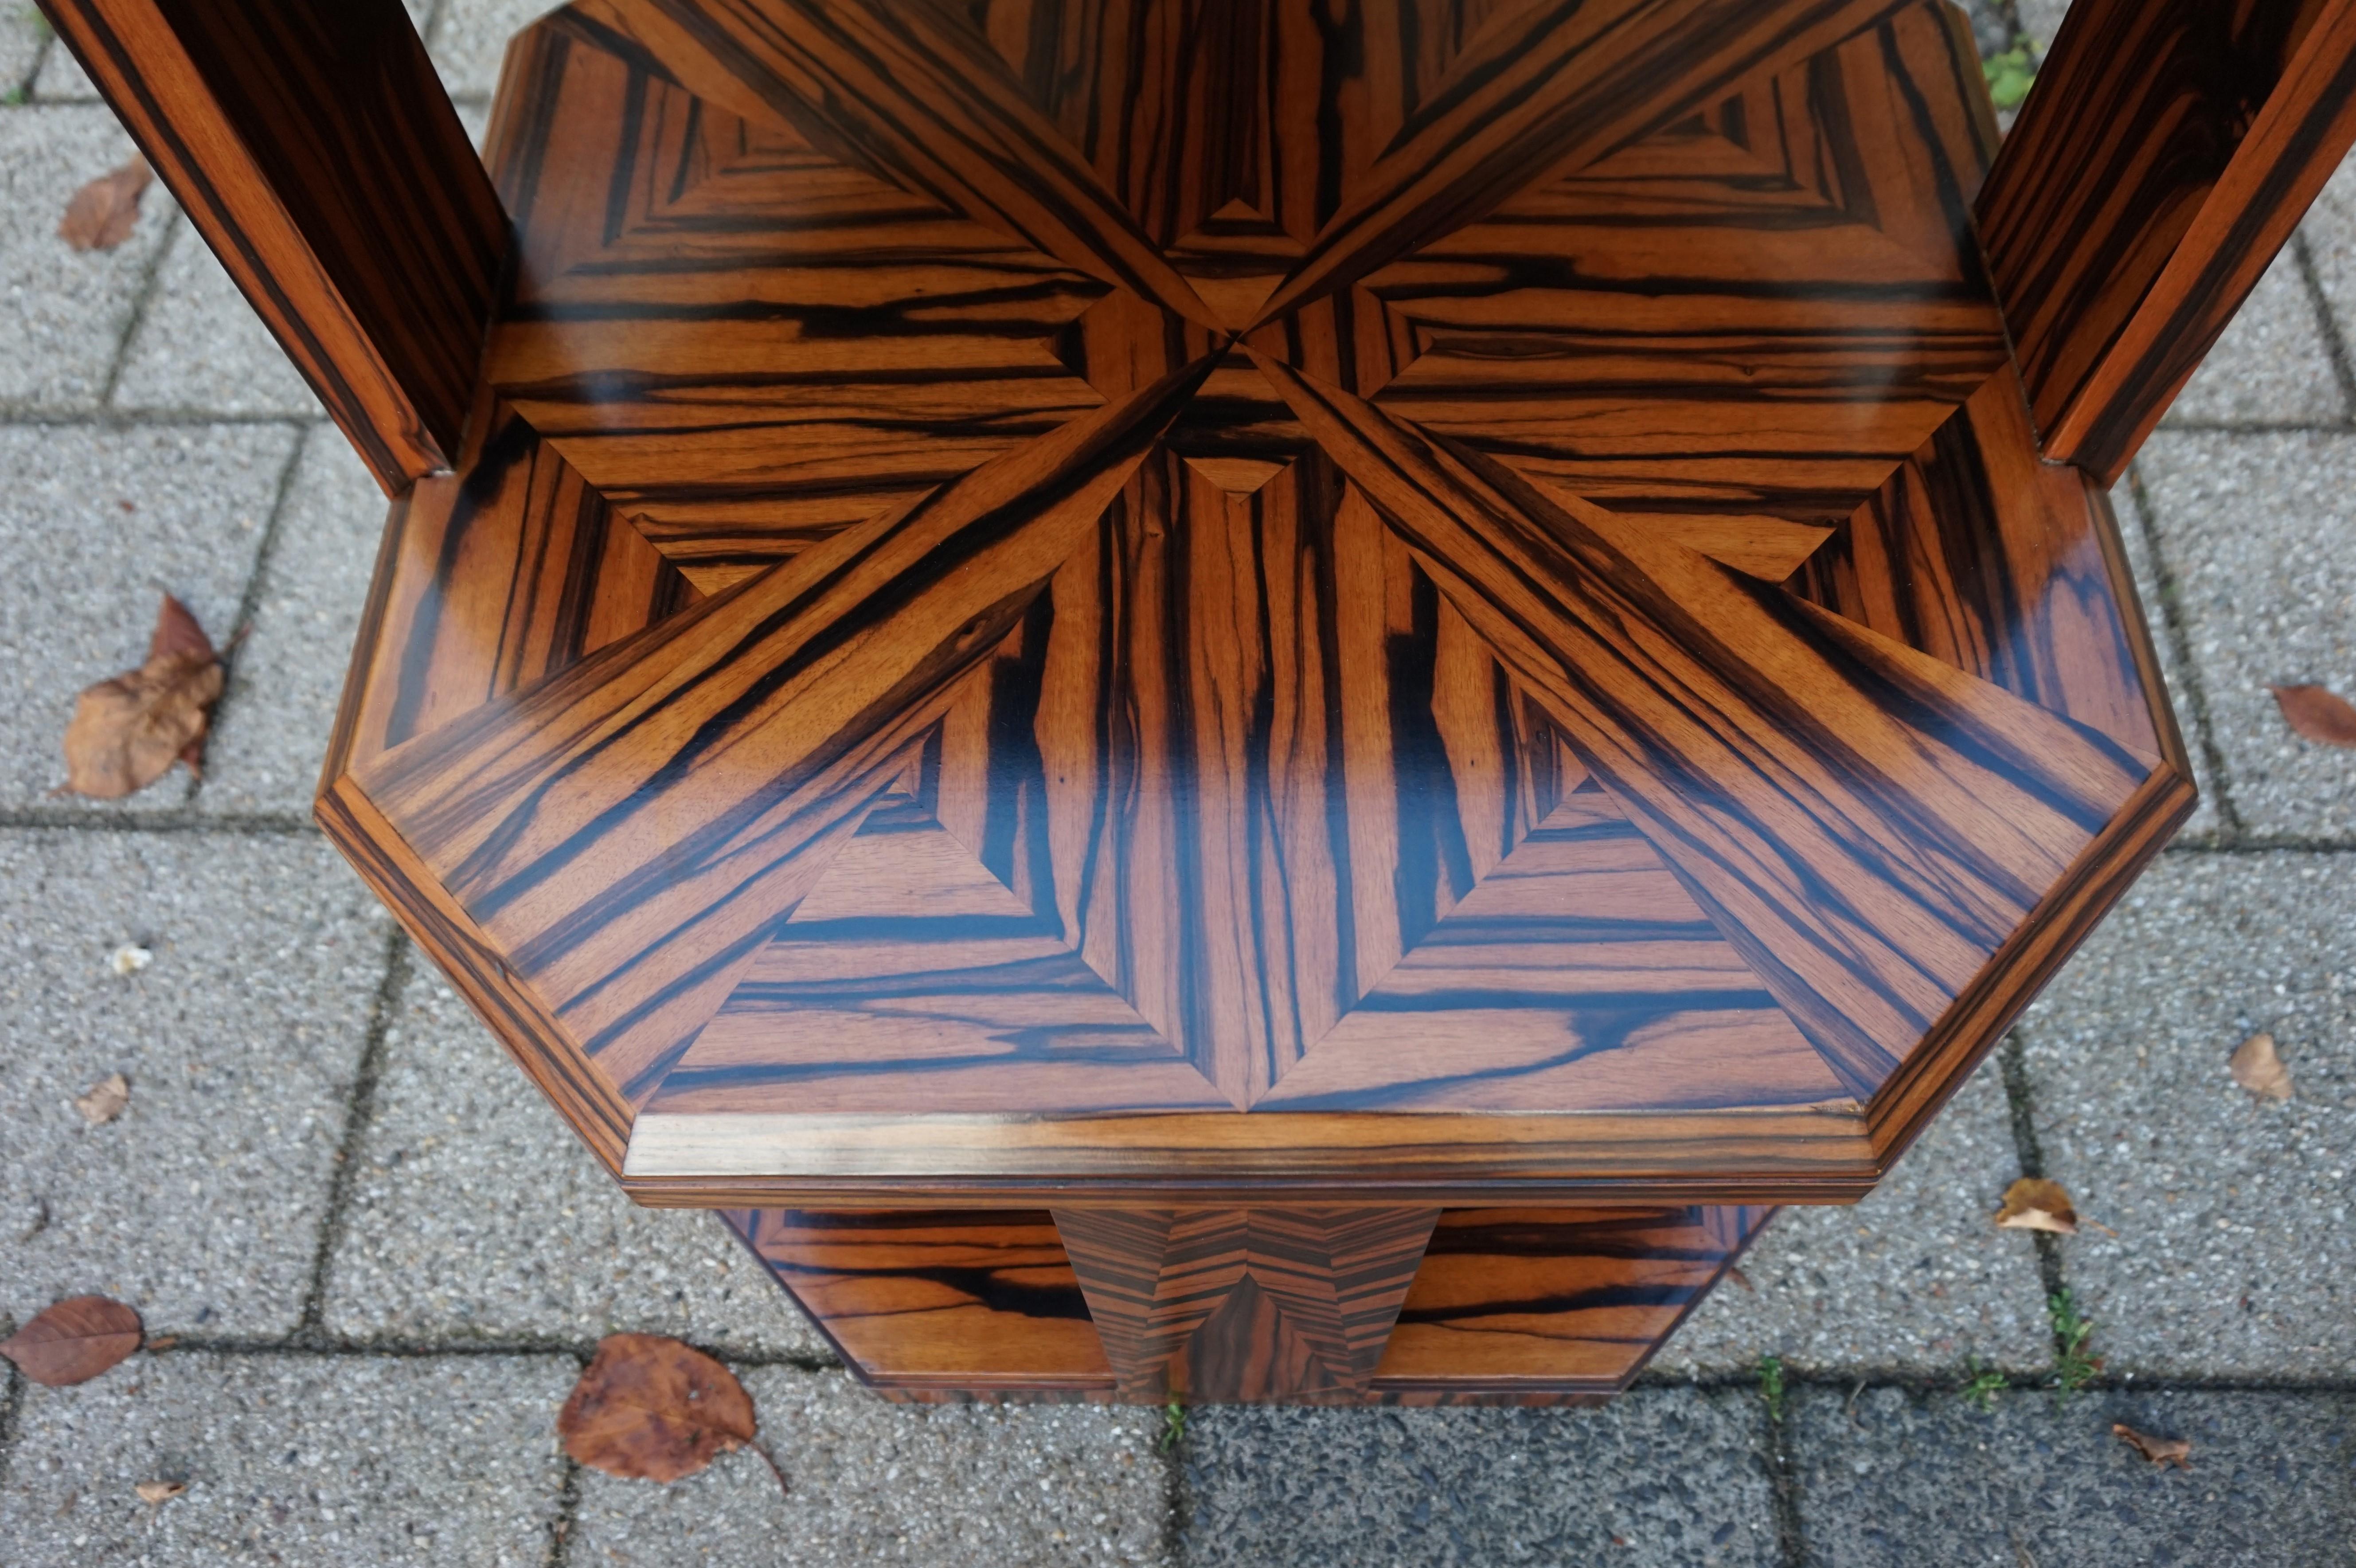 Unique Coromandel Art Deco Étagère Table with Stunning Inlaid Geometric Patterns 6